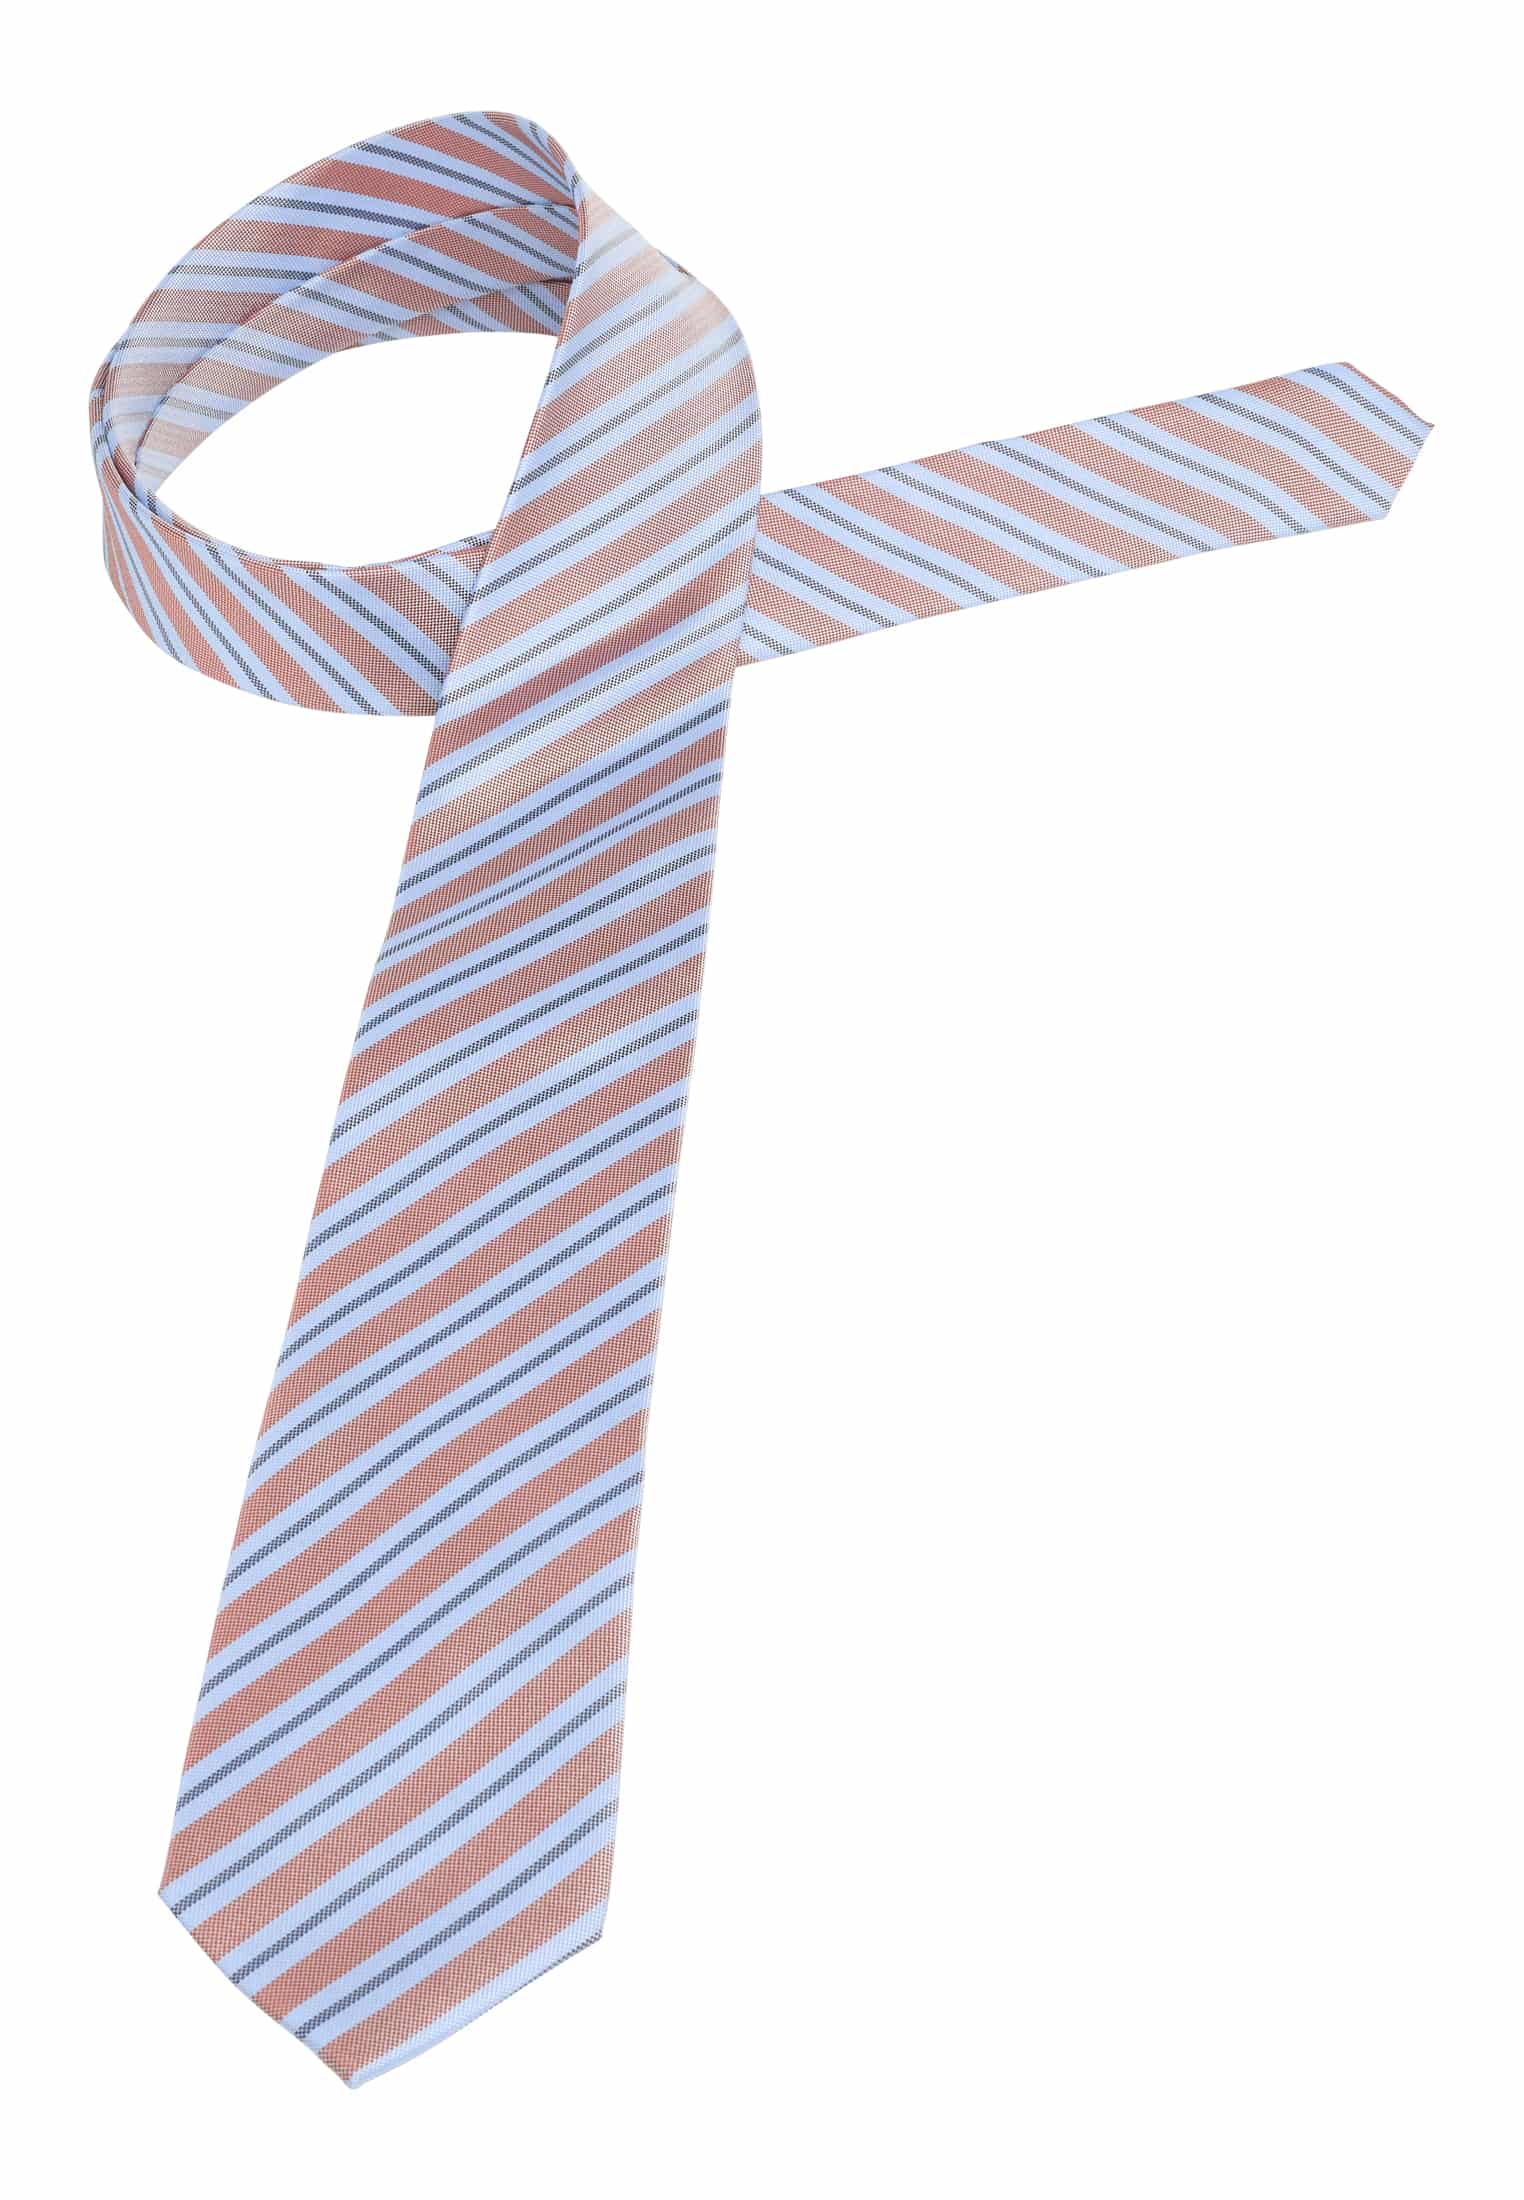 Krawatte in hellblau/orange gemustert | | hellblau/orange 142 1AC02006-81-33-142 